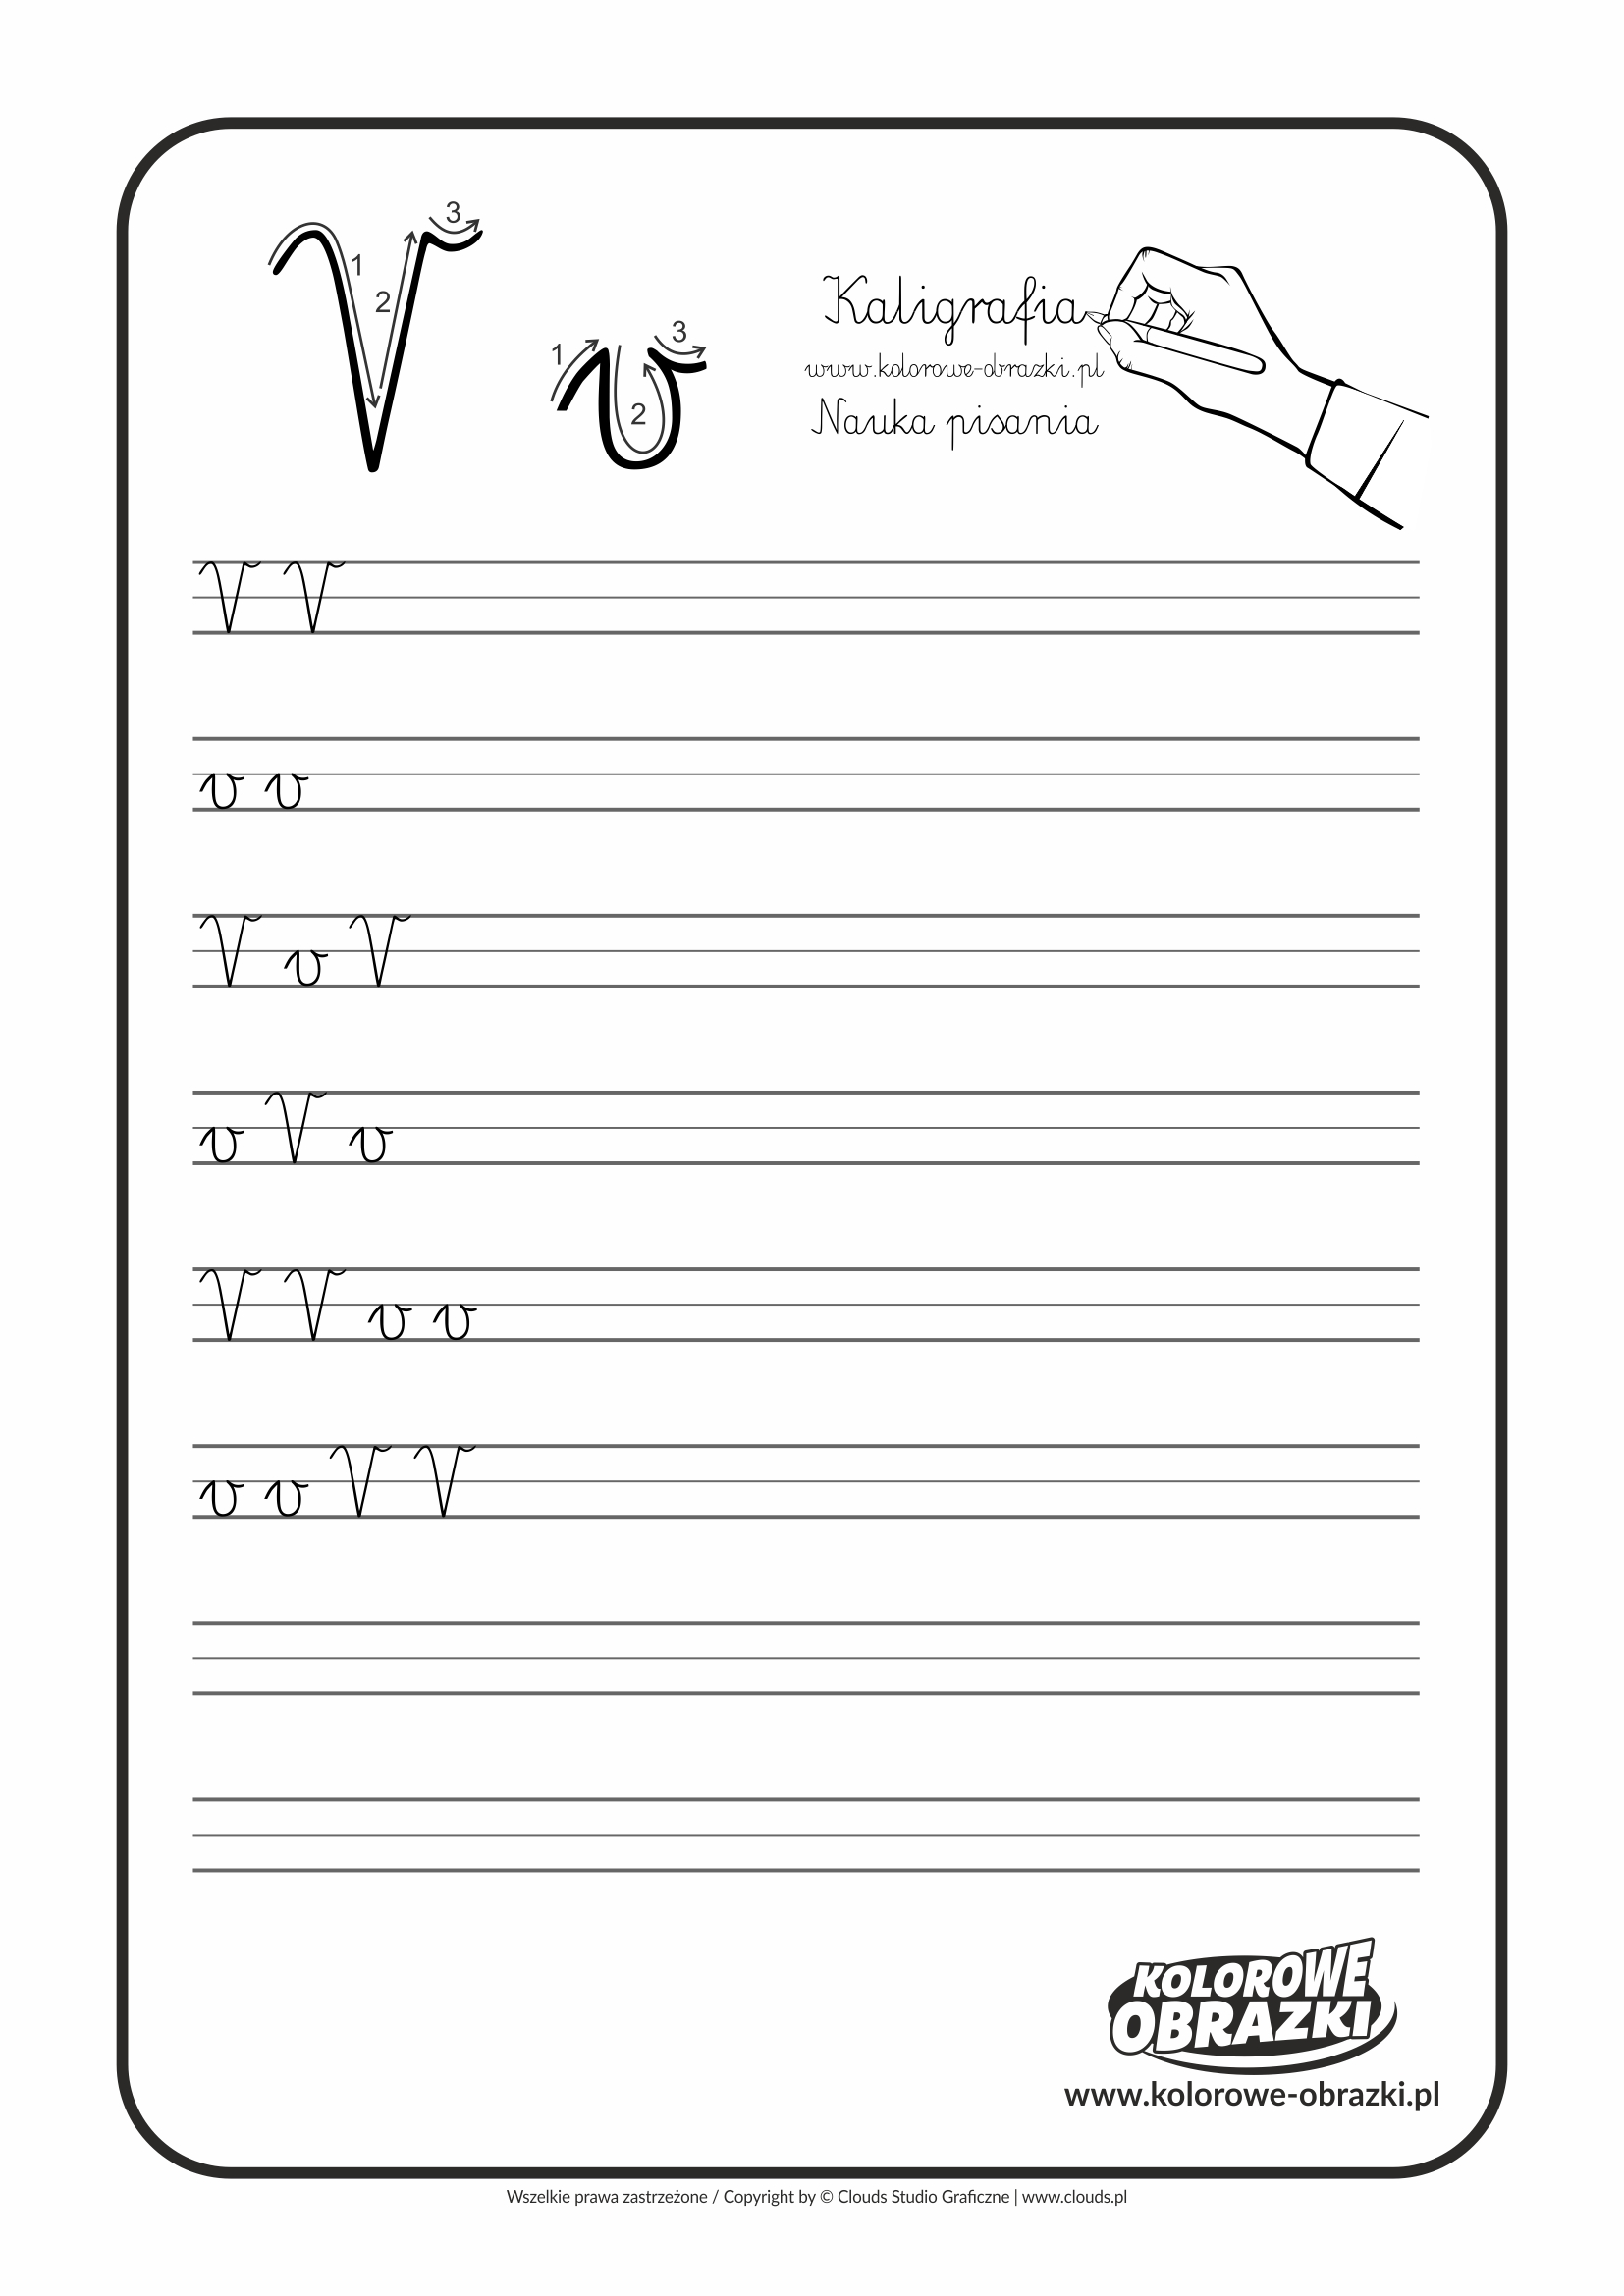 Kaligrafia dla dzieci - Ćwiczenia kaligraficzne / Litera V. Nauka pisania litery V